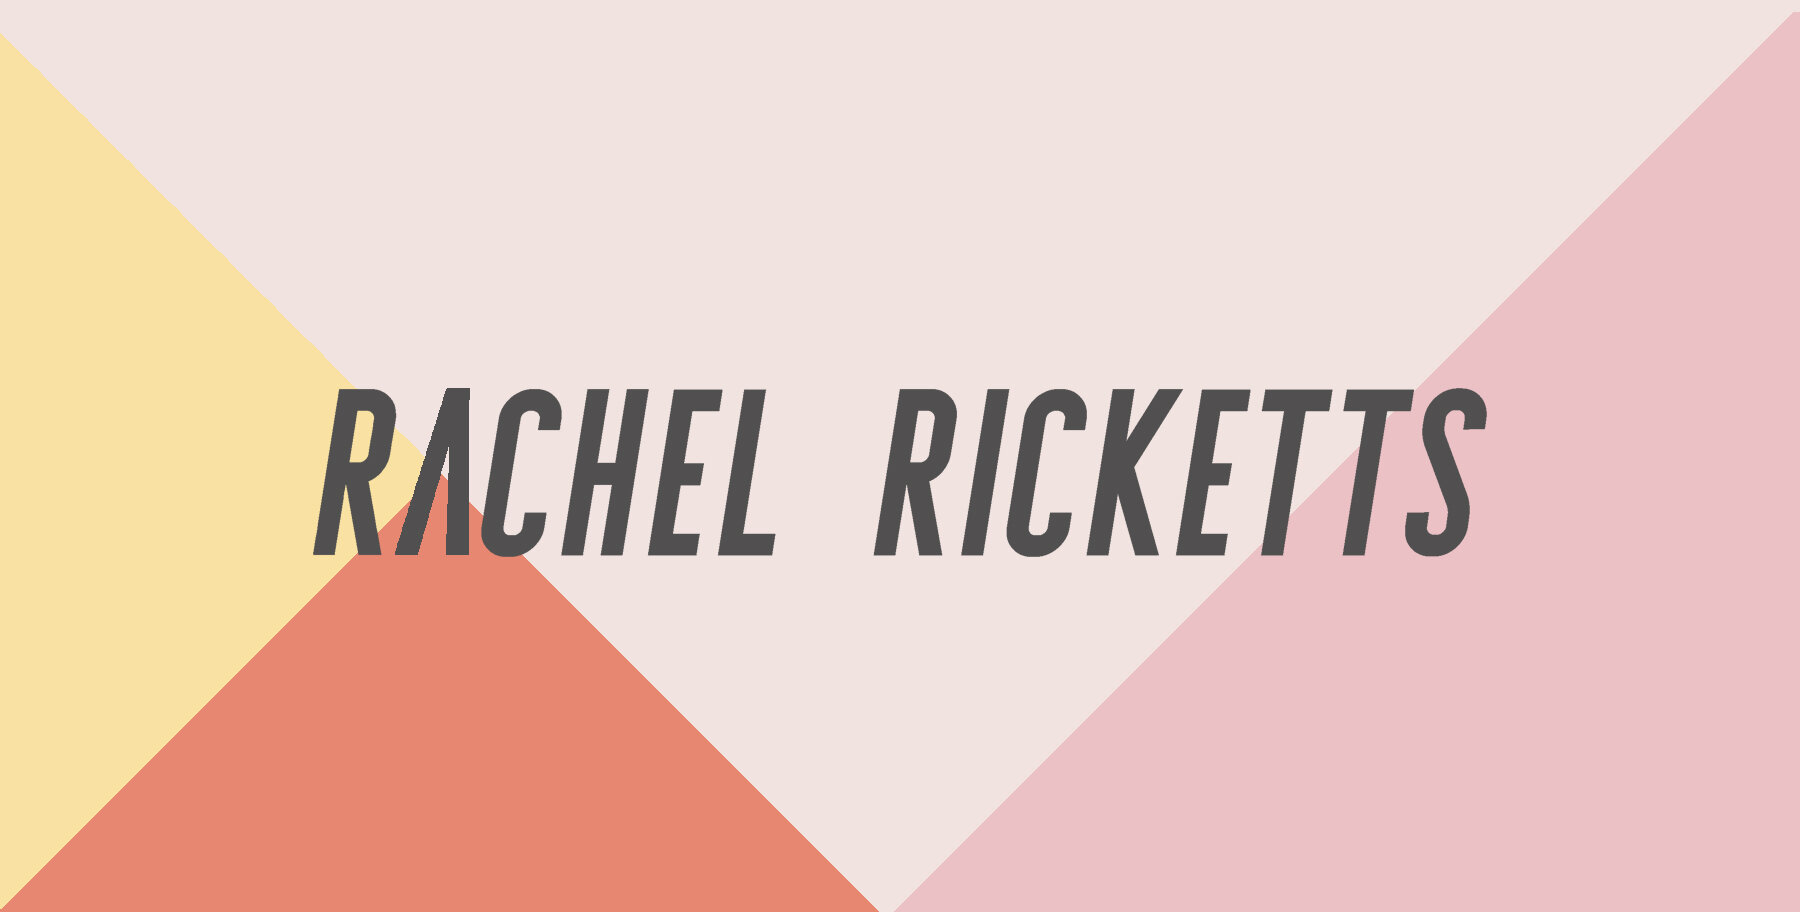 rachel ricketts fogyókúrás tanácsadó